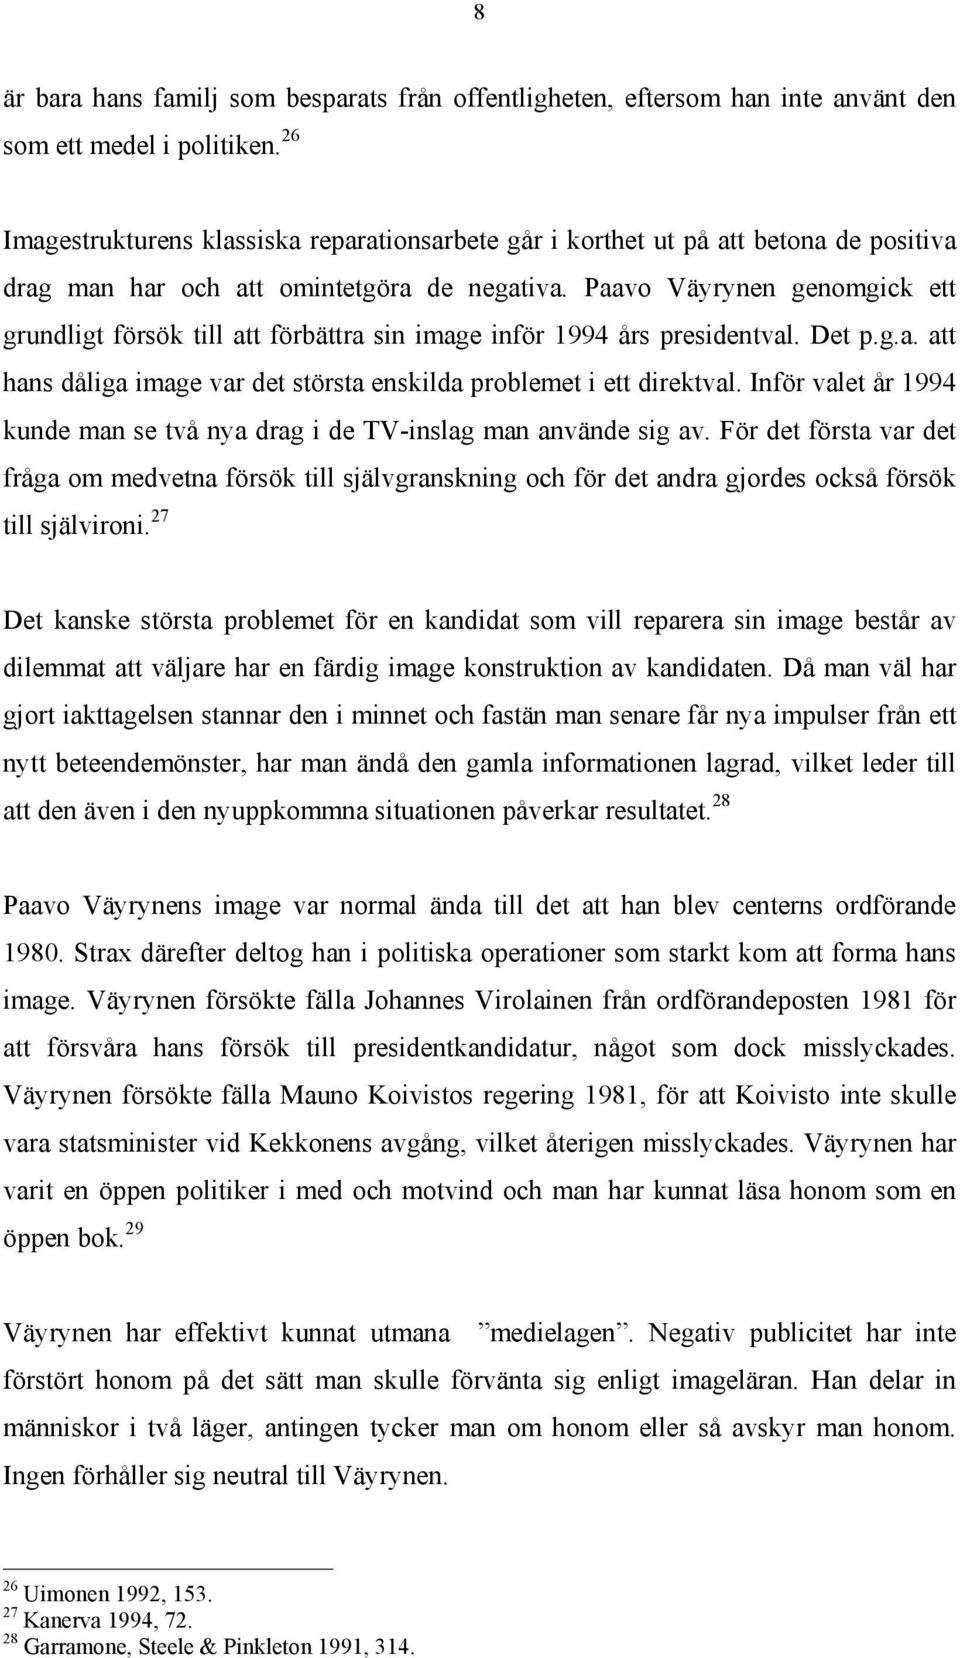 Paavo Väyrynen genomgick ett grundligt försök till att förbättra sin image inför 1994 års presidentval. Det p.g.a. att hans dåliga image var det största enskilda problemet i ett direktval.